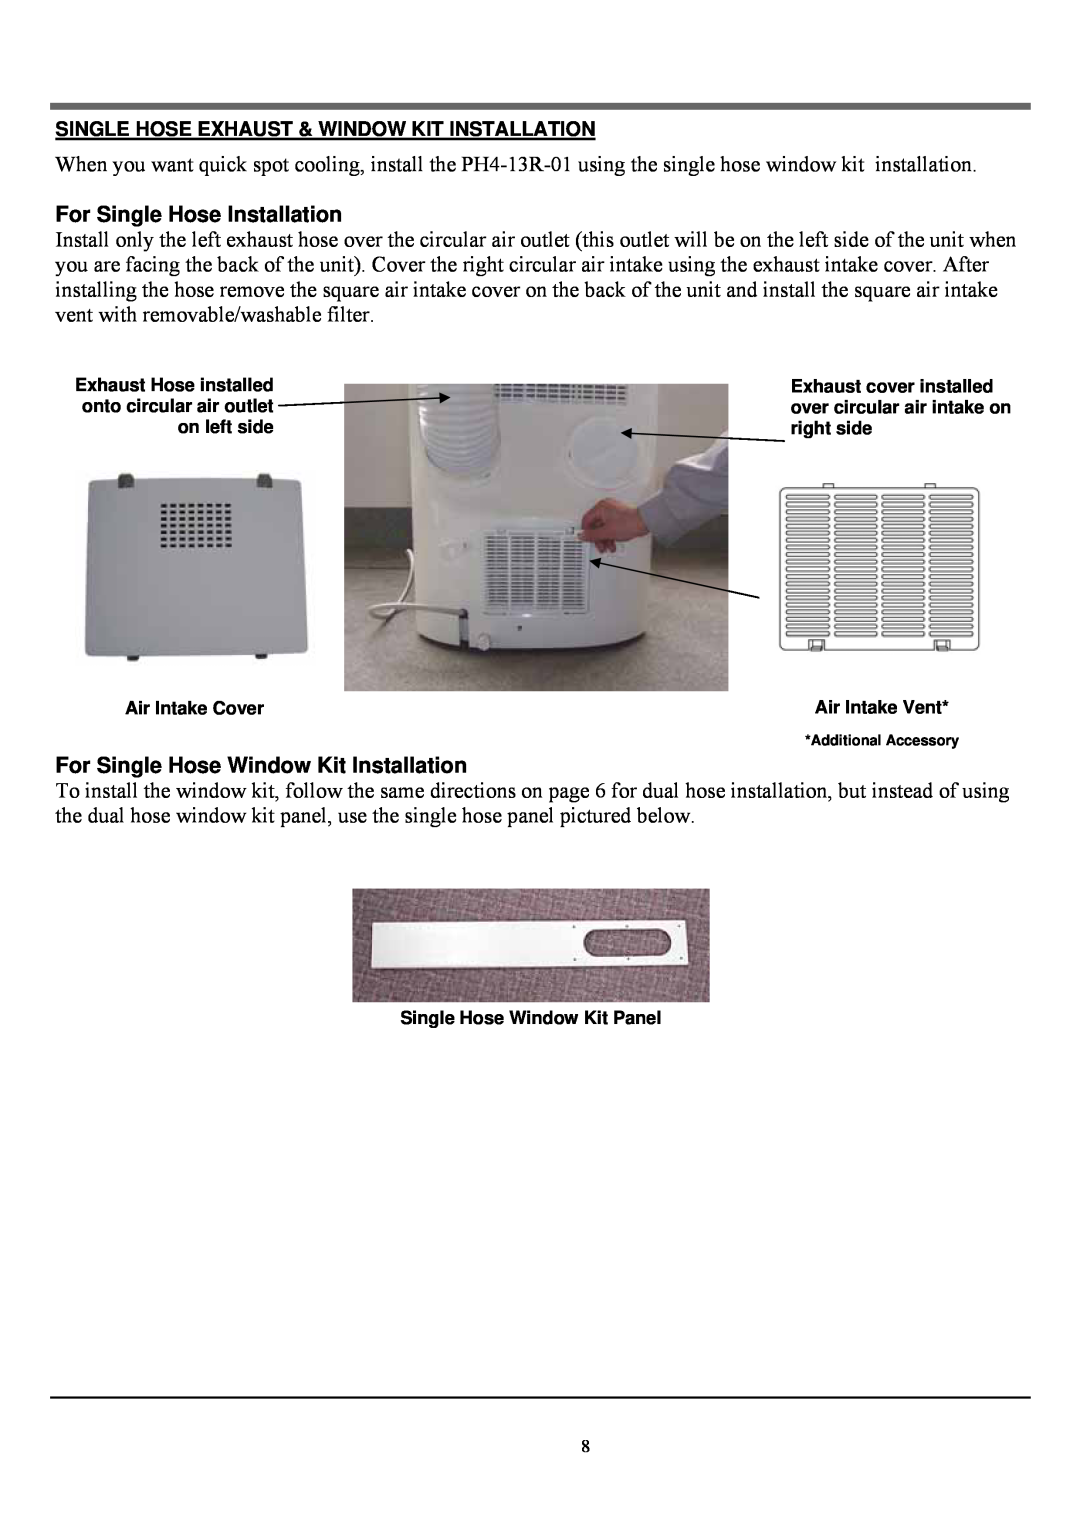 Soleus Air PH4-13R-01 manual For Single Hose Installation, For Single Hose Window Kit Installation 